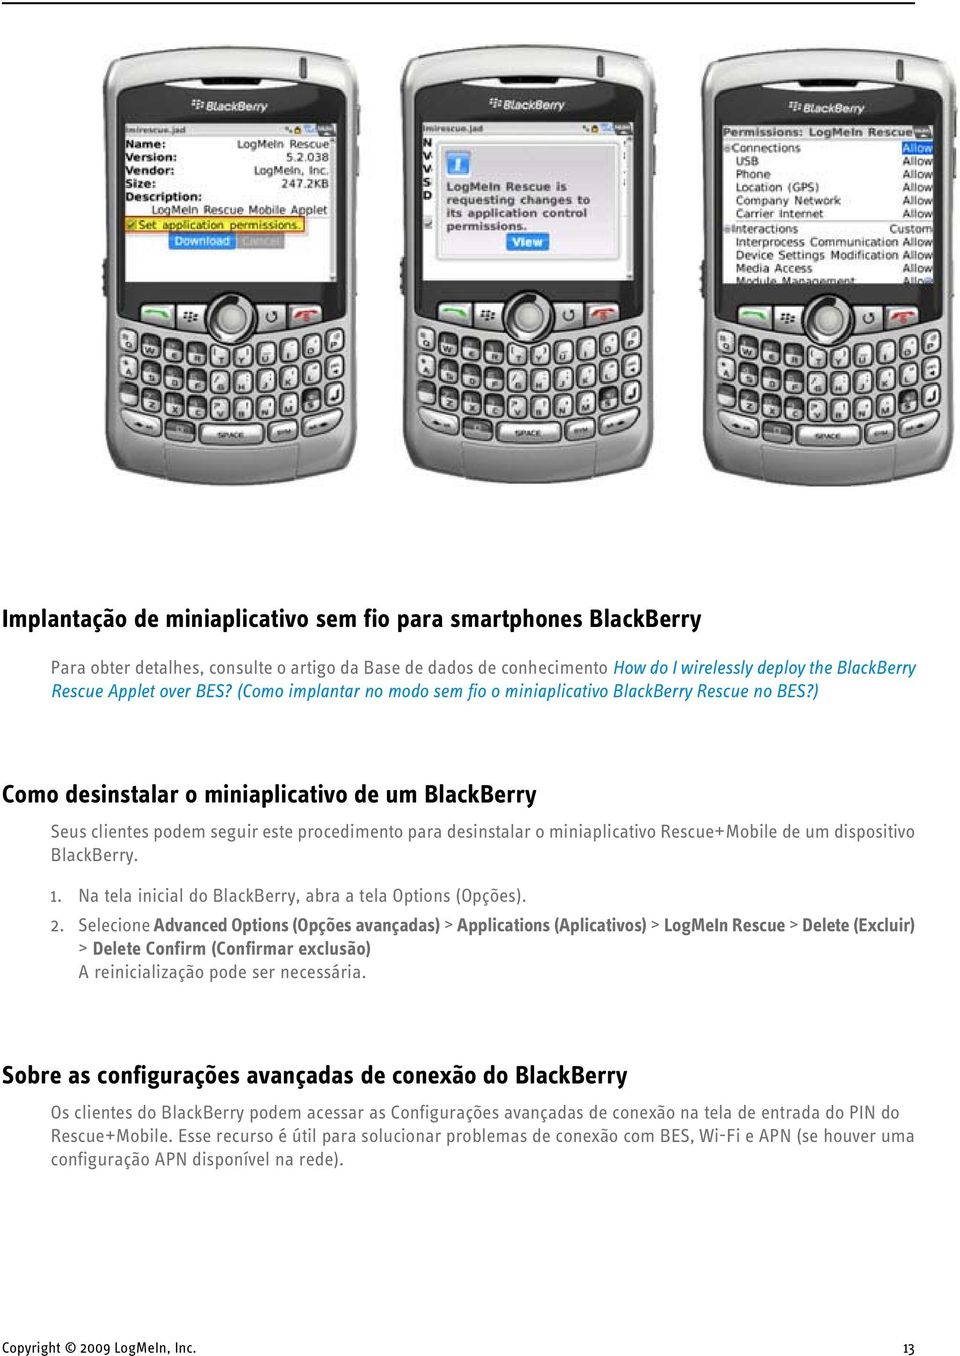 ) Como desinstalar o miniaplicativo de um BlackBerry Seus clientes podem seguir este procedimento para desinstalar o miniaplicativo Rescue+Mobile de um dispositivo BlackBerry. 1.